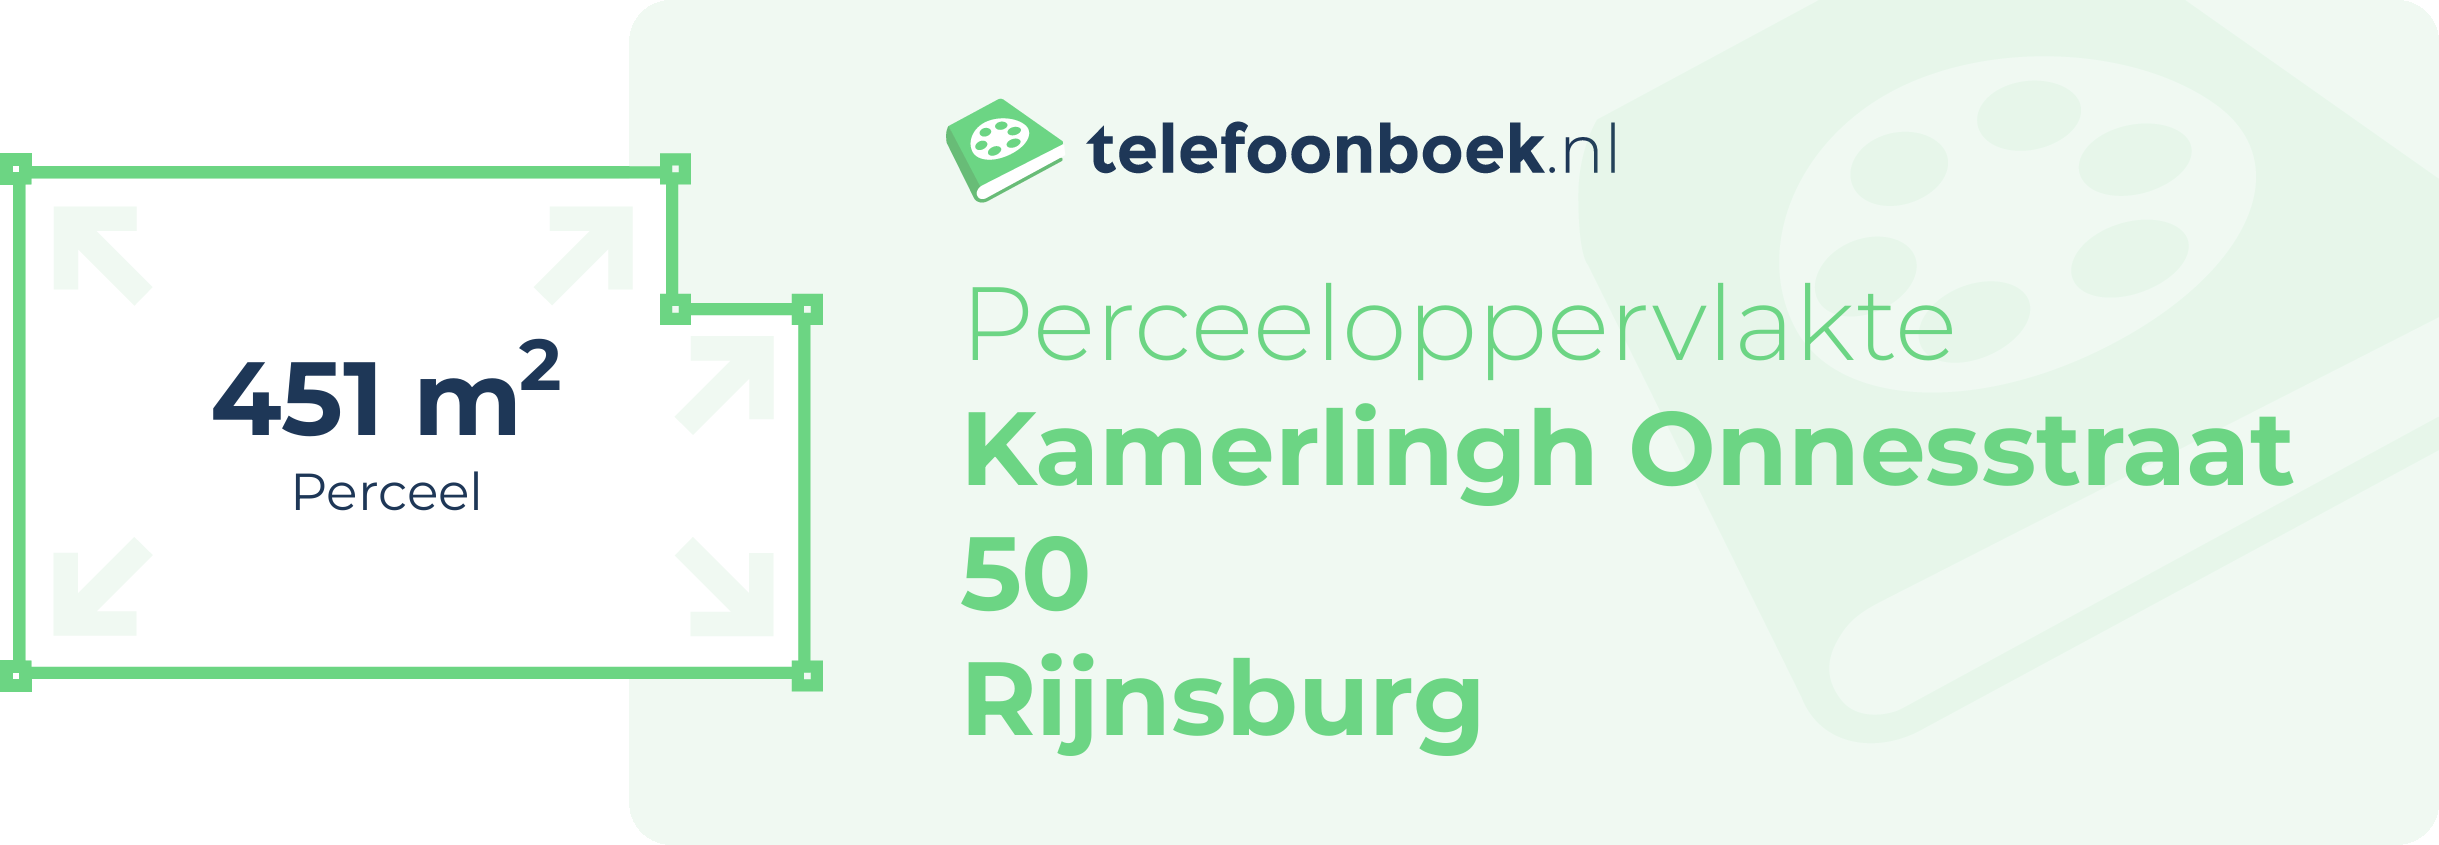 Perceeloppervlakte Kamerlingh Onnesstraat 50 Rijnsburg